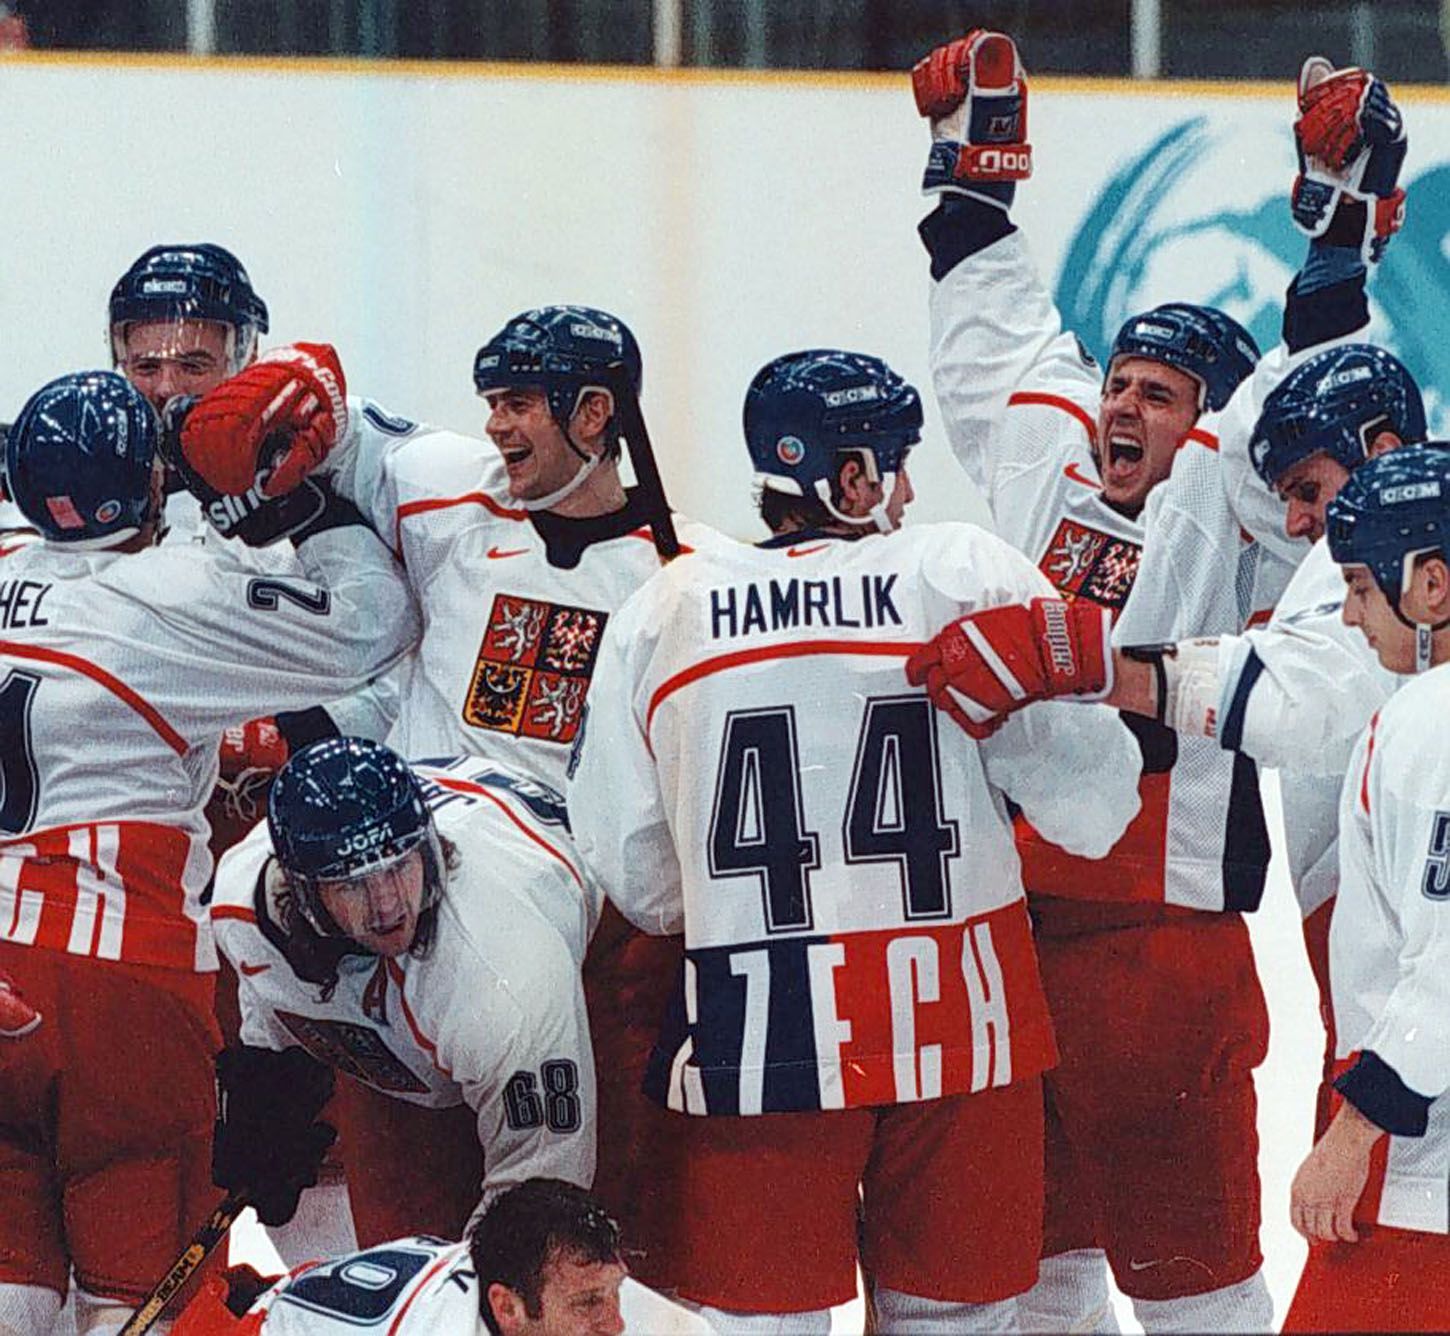 Archivní snímky z ZOH Nagano 1998 - hokej. Radist po výhře nad Kanadou